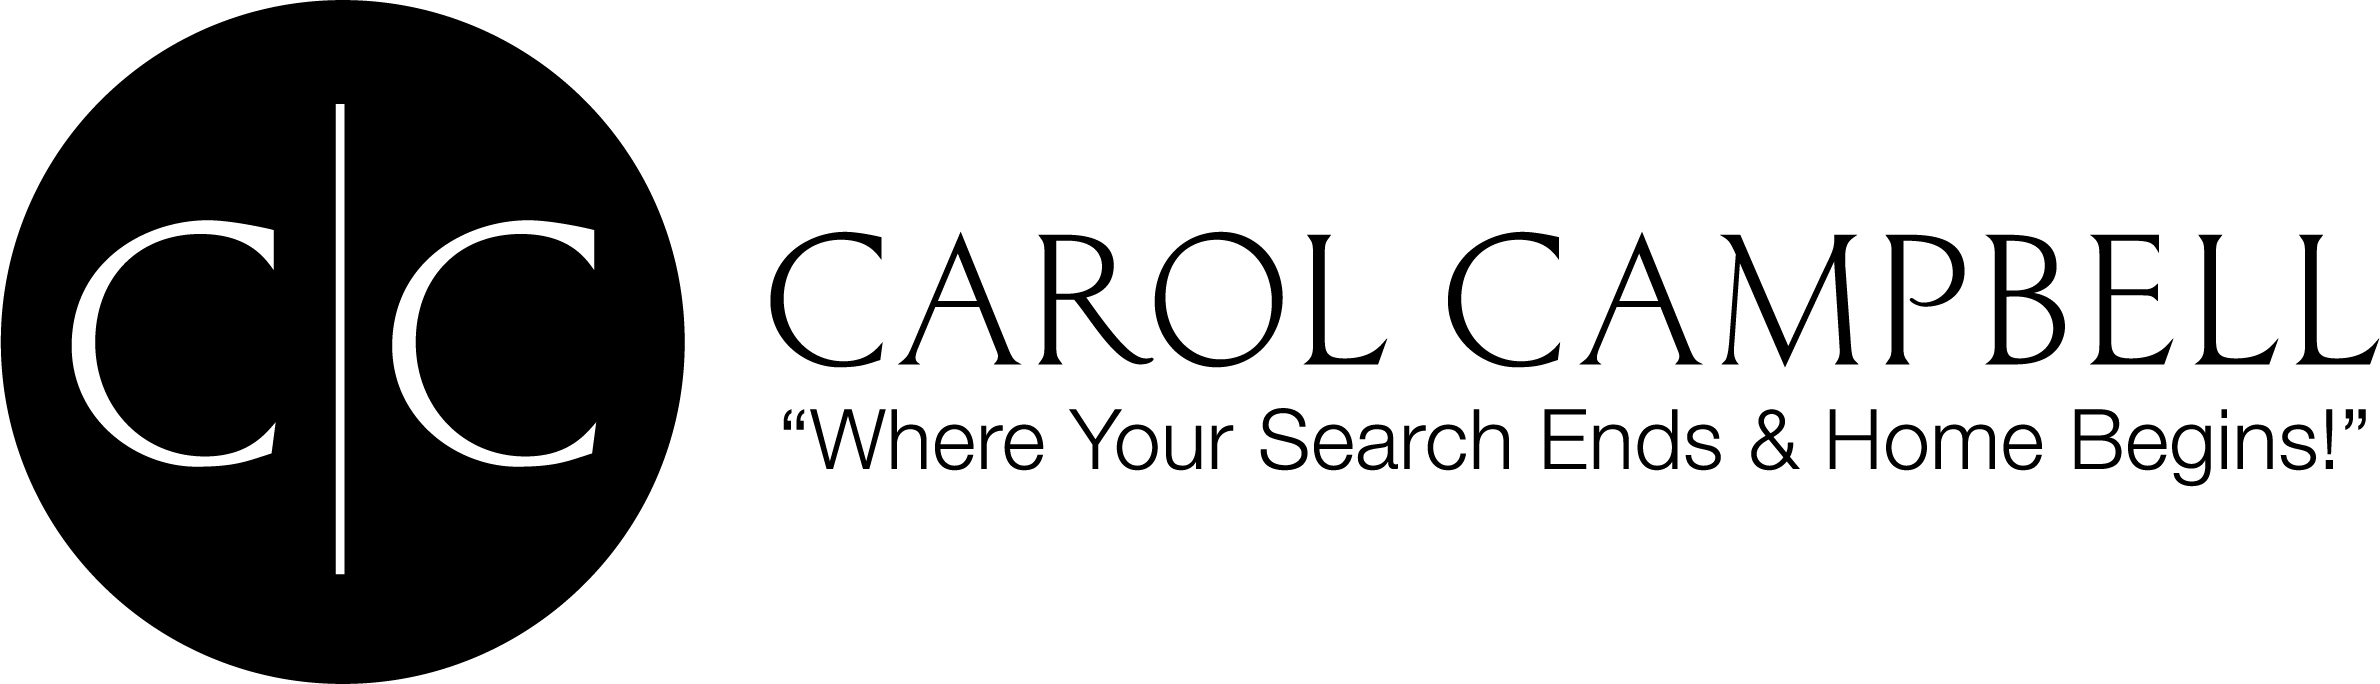 carol campbell logo